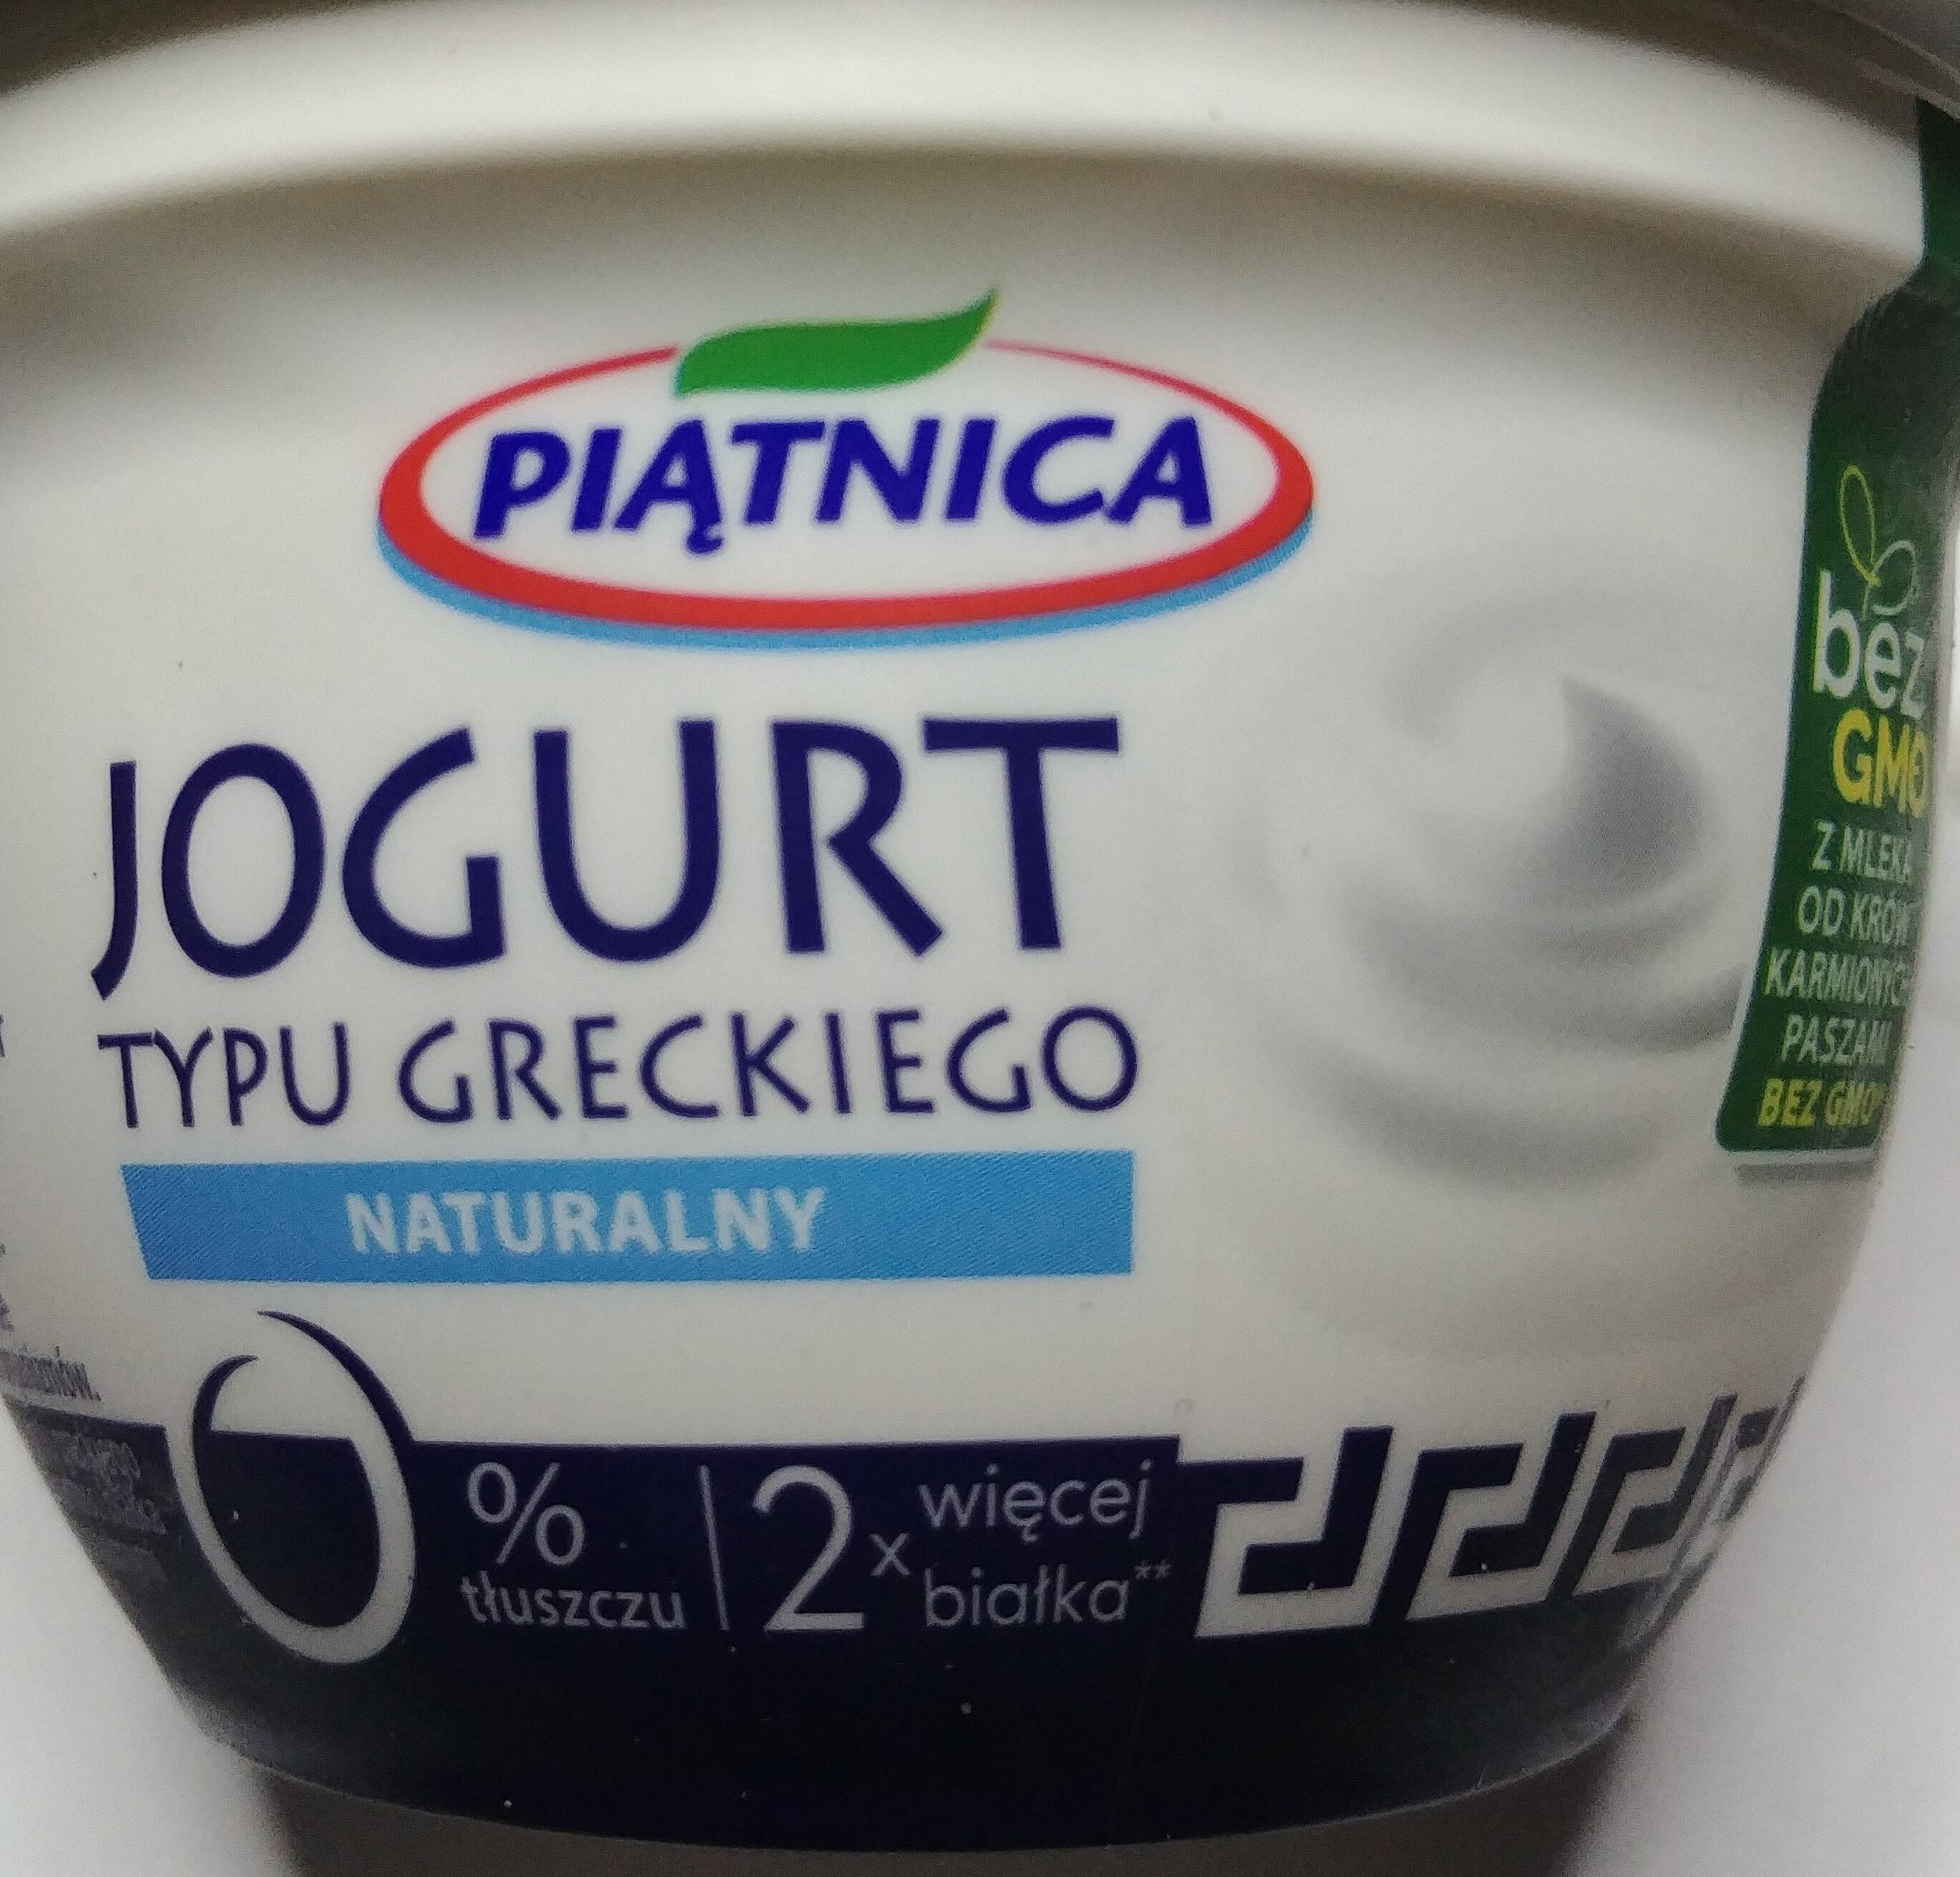 Greek Jogurt - Product